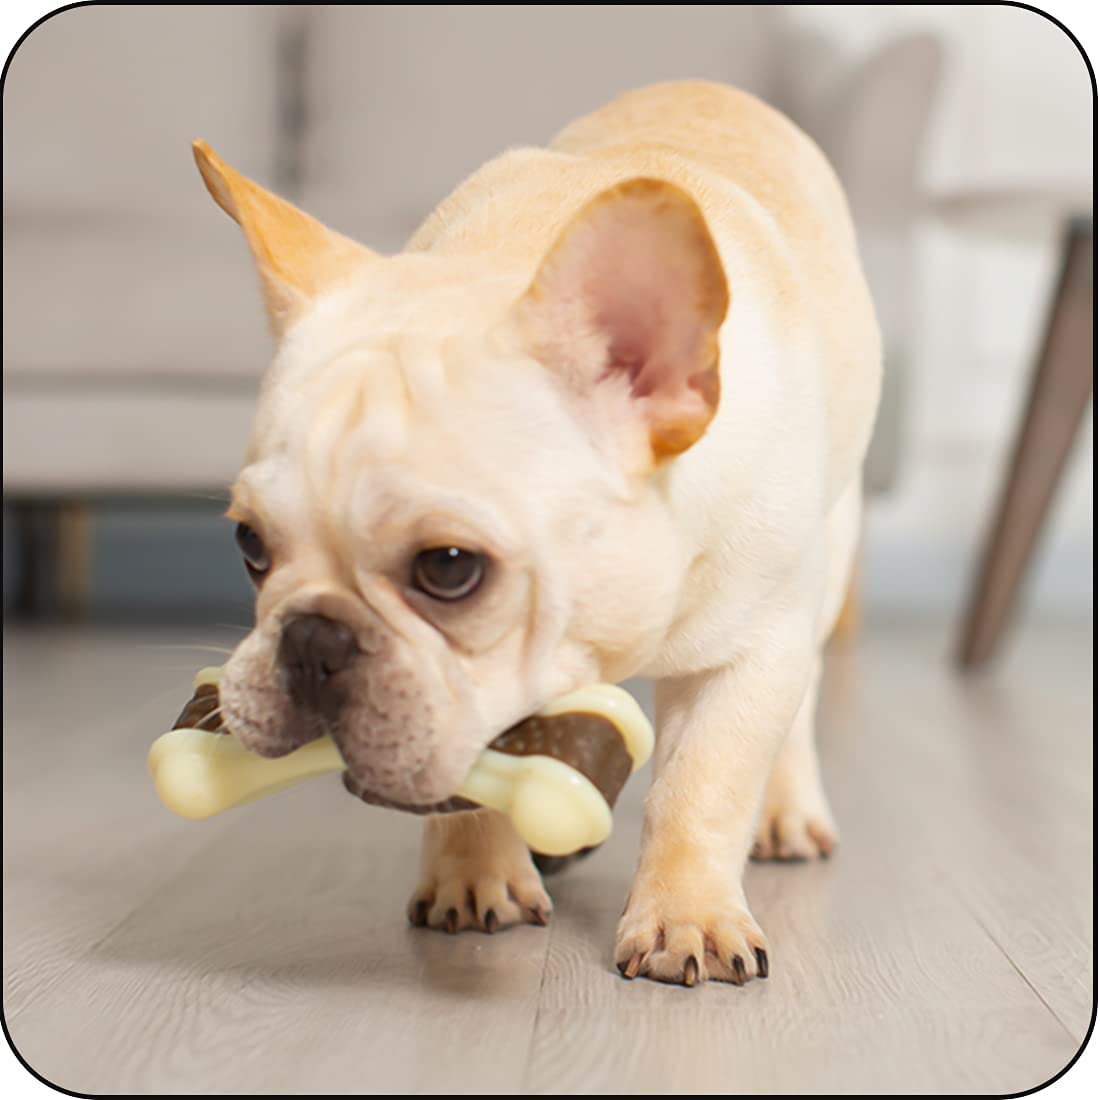 MolarDog™ Bone Shaped Dog Toys | Dog